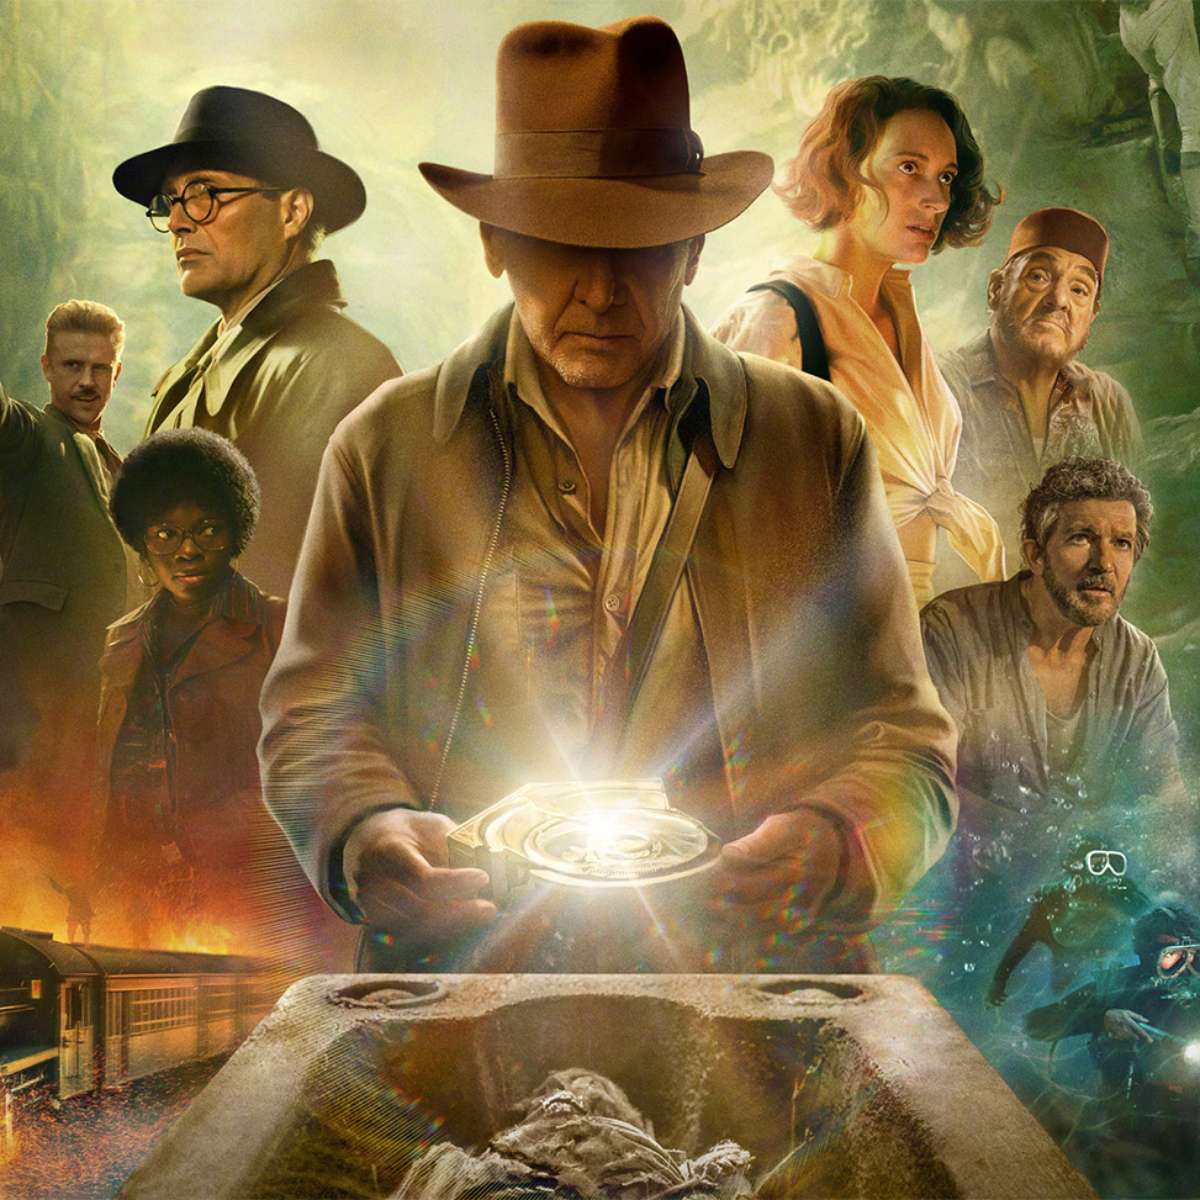 Indiana Jones 5  Conheça personagens do filme em novos pôsteres